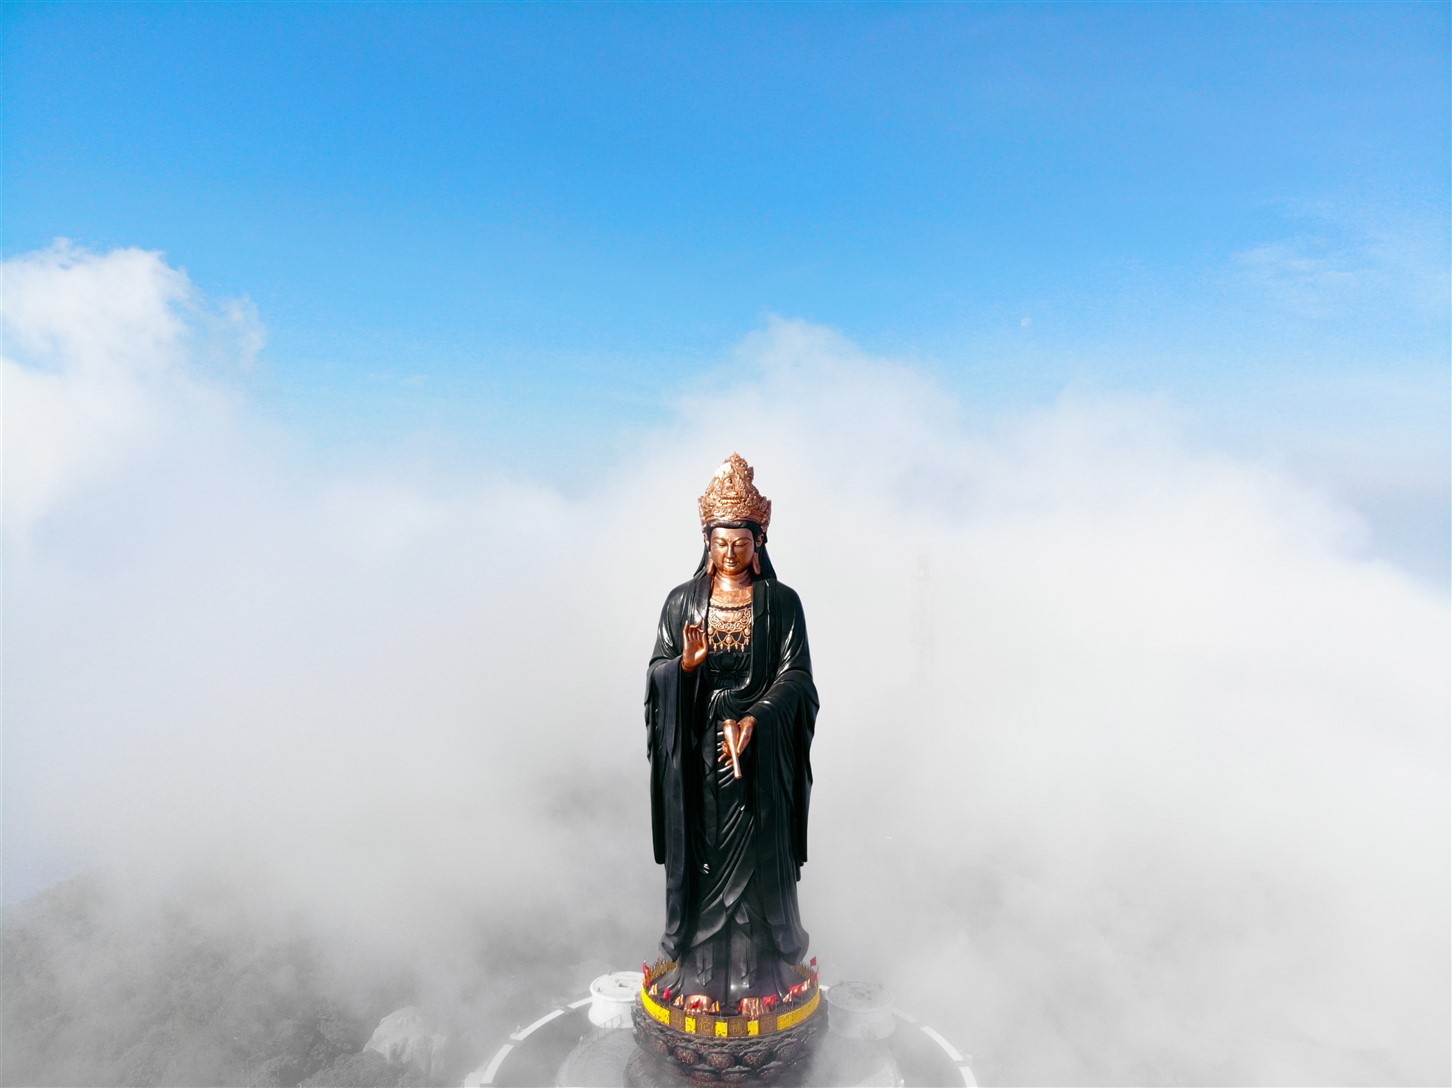 Tượng Phật Bà đồng cao nhất Châu Á: Hình ảnh Tượng Phật Bà đồng cao nhất Châu Á chắc chắn sẽ làm bạn ấn tượng mạnh về sự trang nghiêm, thanh tịnh và yên bình. Với chiều cao lớn nhất Châu Á, tượng Phật Bà đến từ đền Tây Ninh chắc chắn sẽ khiến bạn cảm thấy kính phục và tôn trọng.